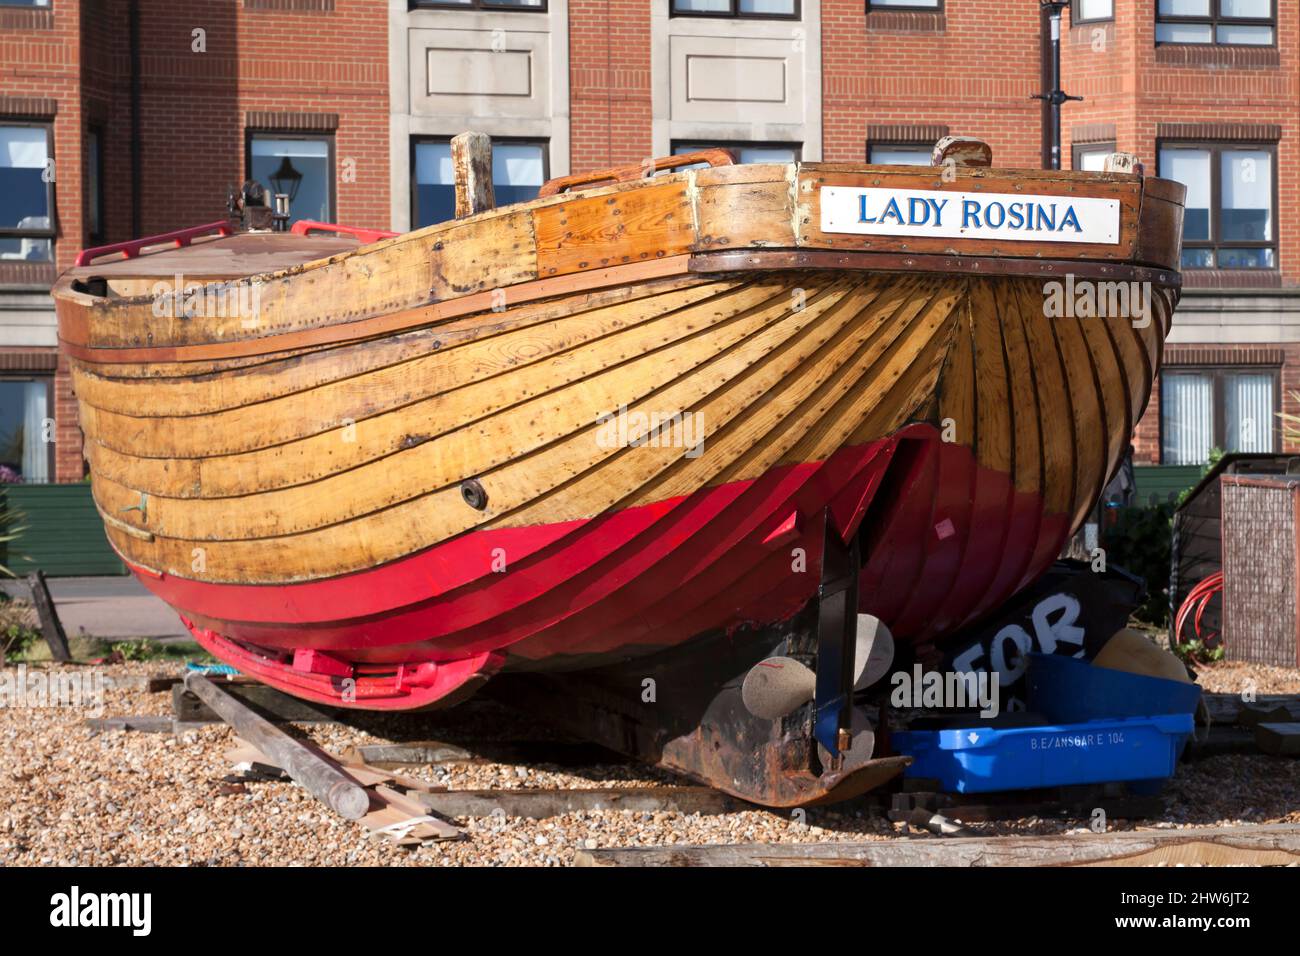 Vista ravvicinata della poppa della Madonna Rosina, una tradizionale barca da pesca in legno restaurata, sulla spiaggia, a Deal, Kent Foto Stock